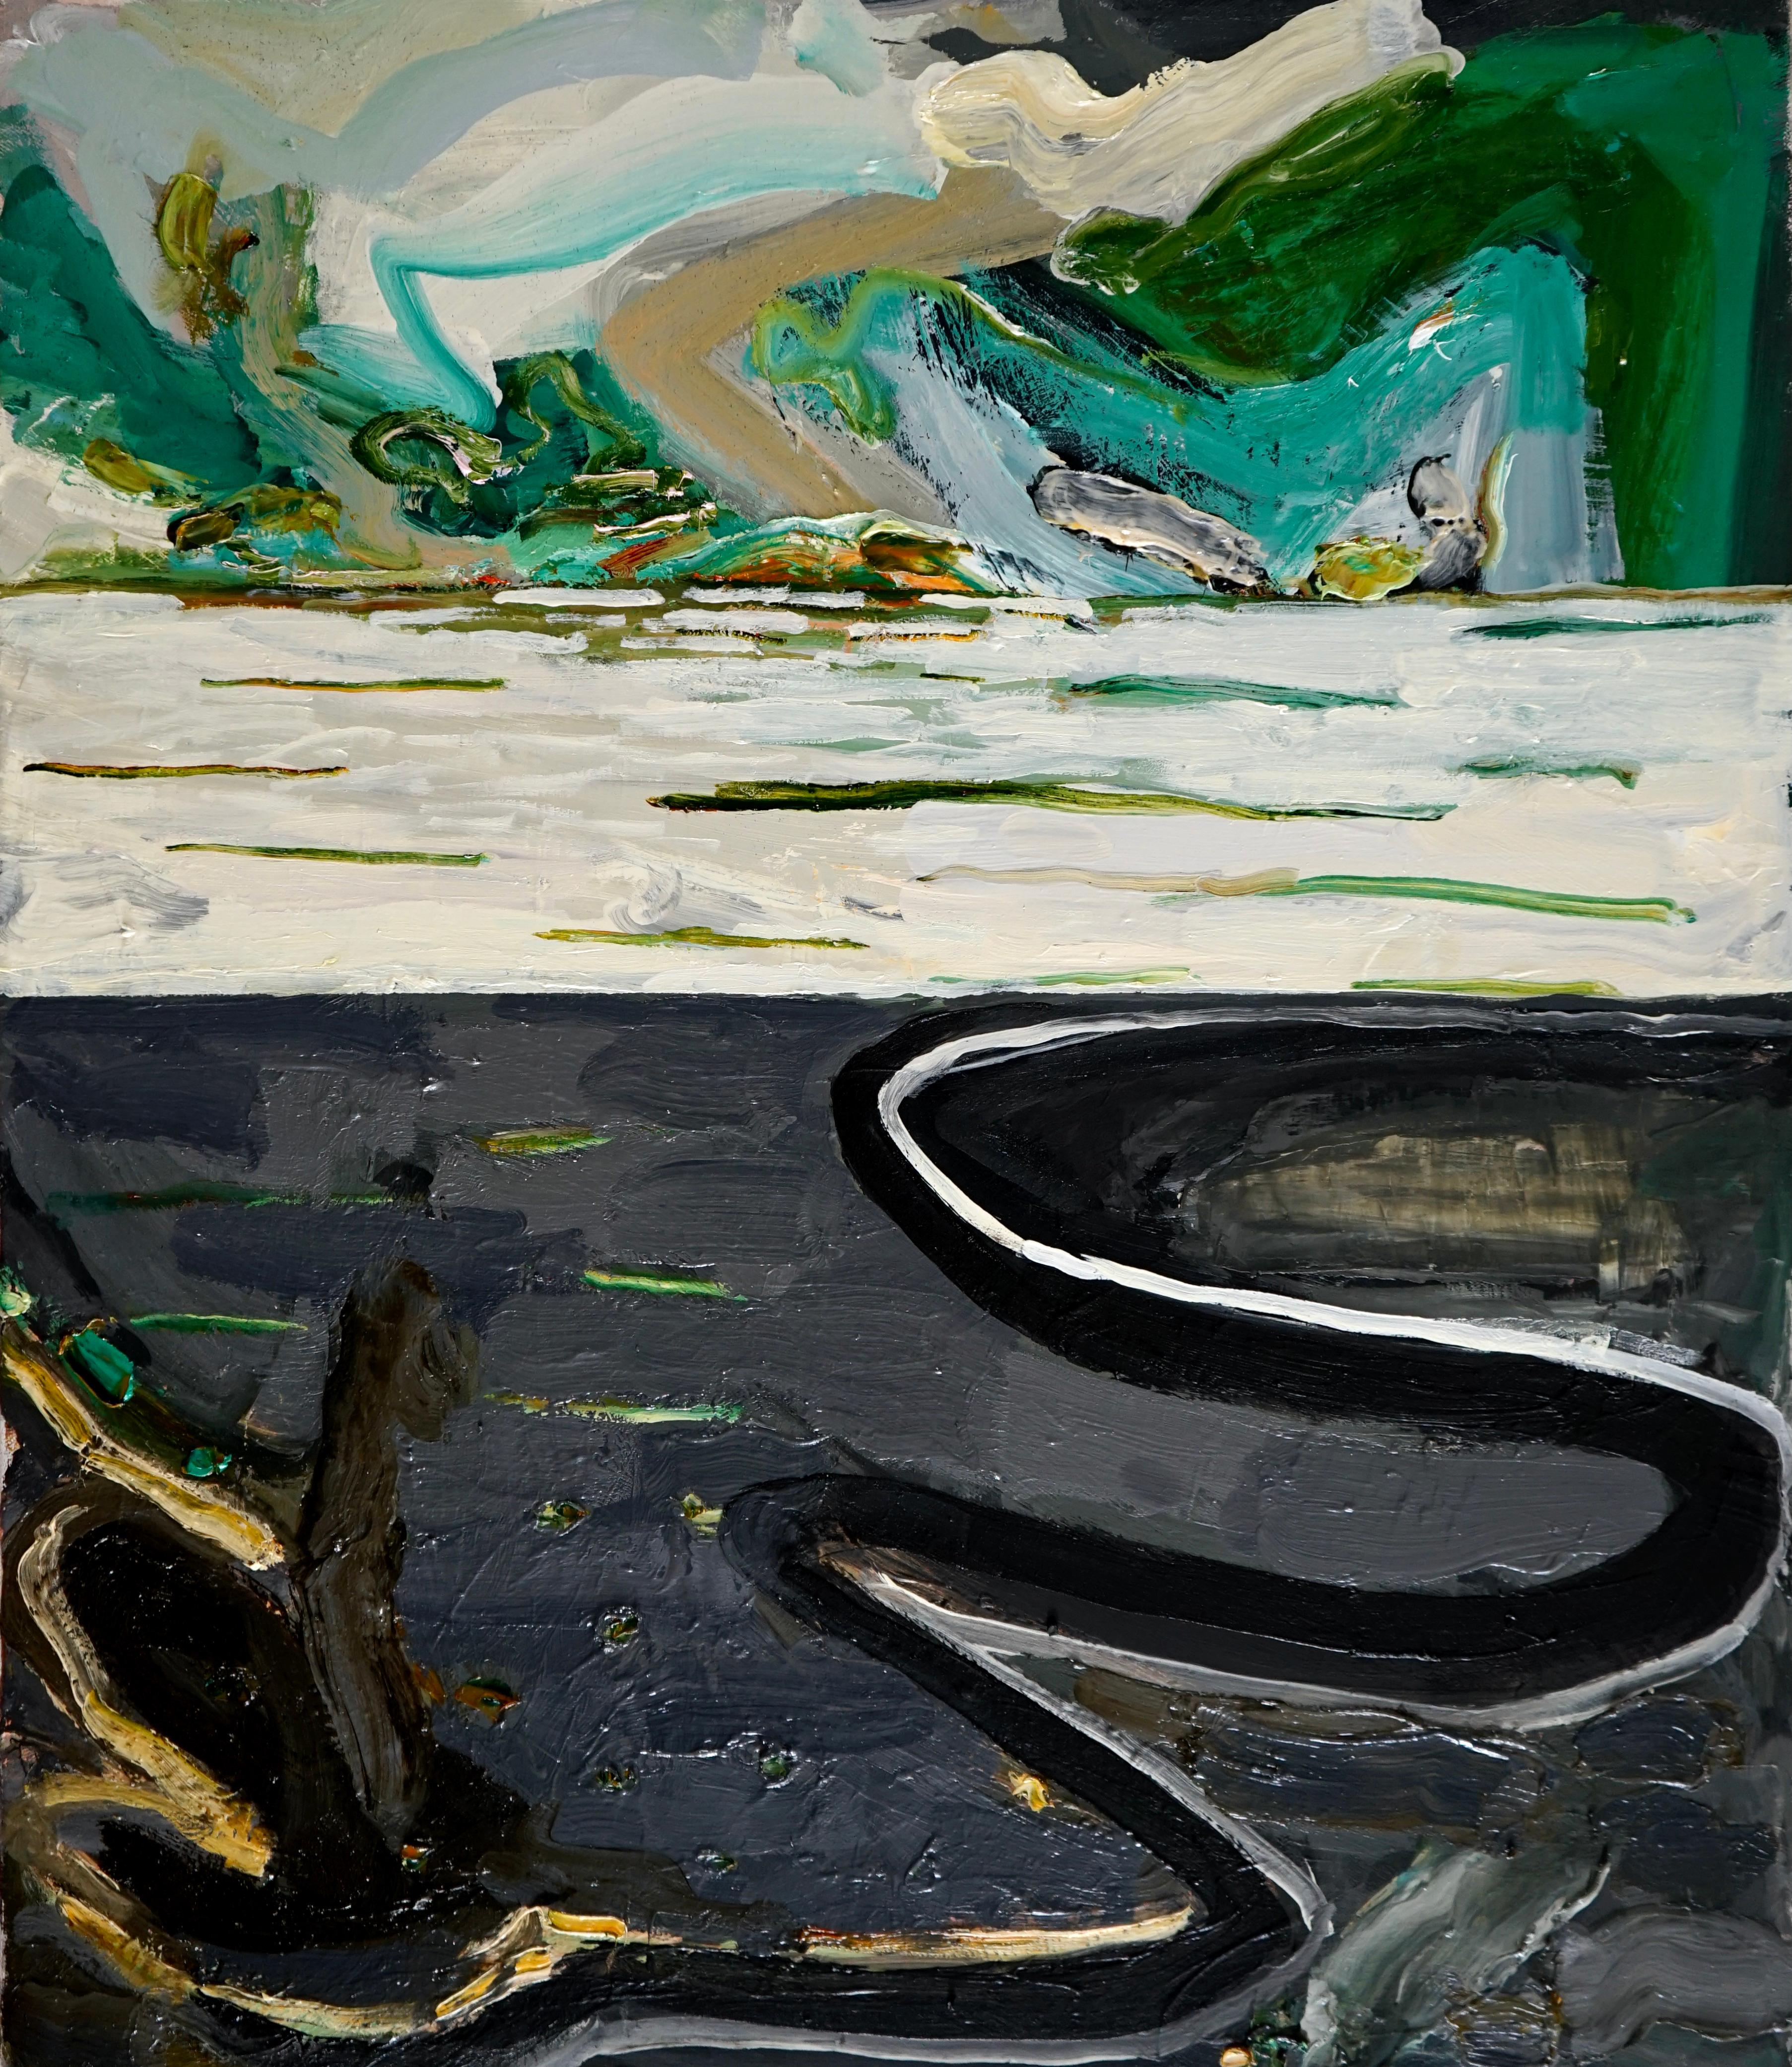 Abstract Painting Alfredo Gisholt - "Maine Landscape - Seascape", huile sur toile, peinture abstraite, art contemporain.